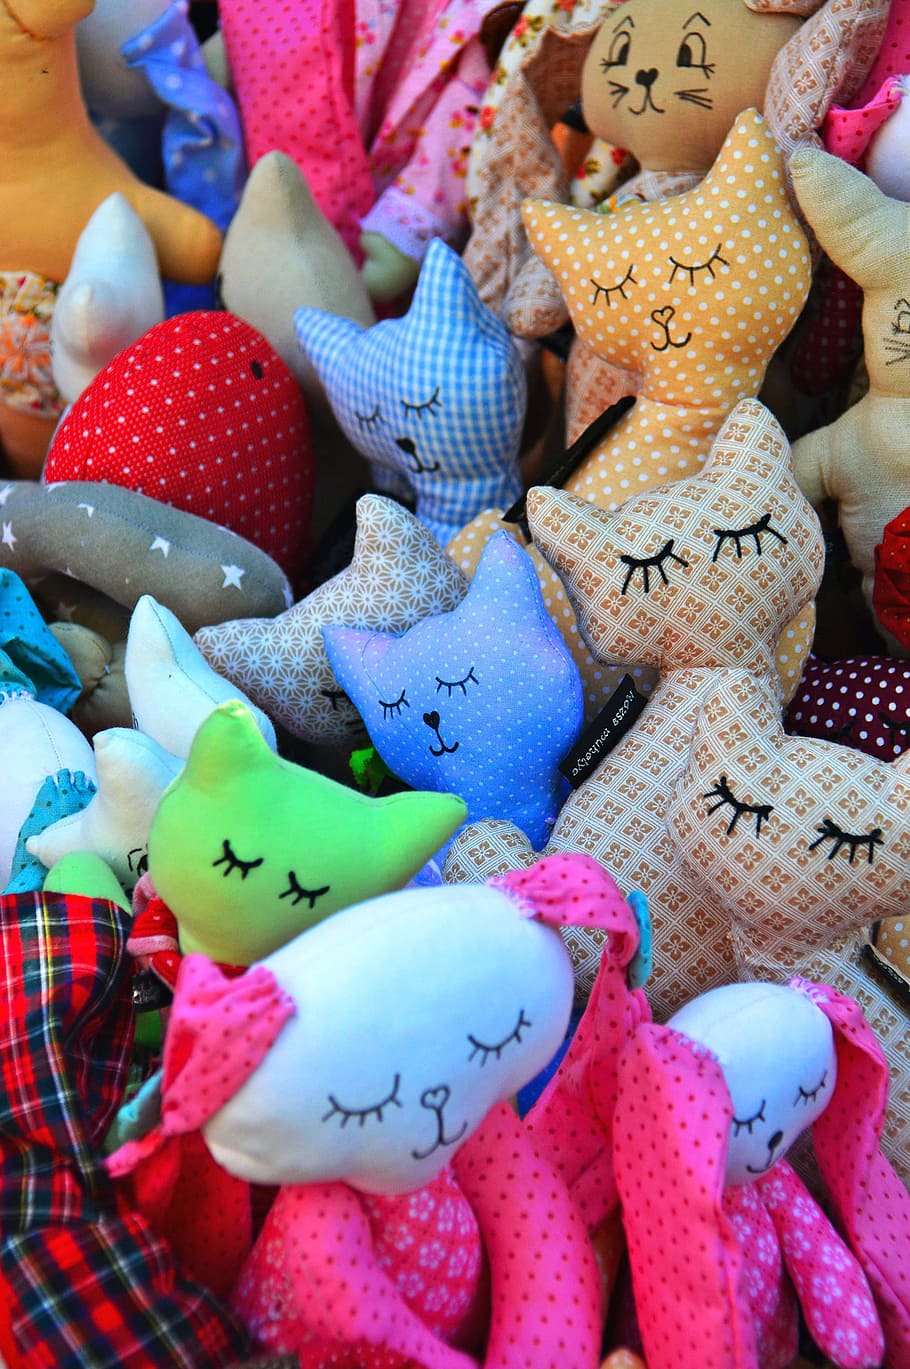 aneka-warna kucing, mewah, mainan banyak, warna, tekstil, civ adalah, desain, boneka, seni dan kerajinan, unik